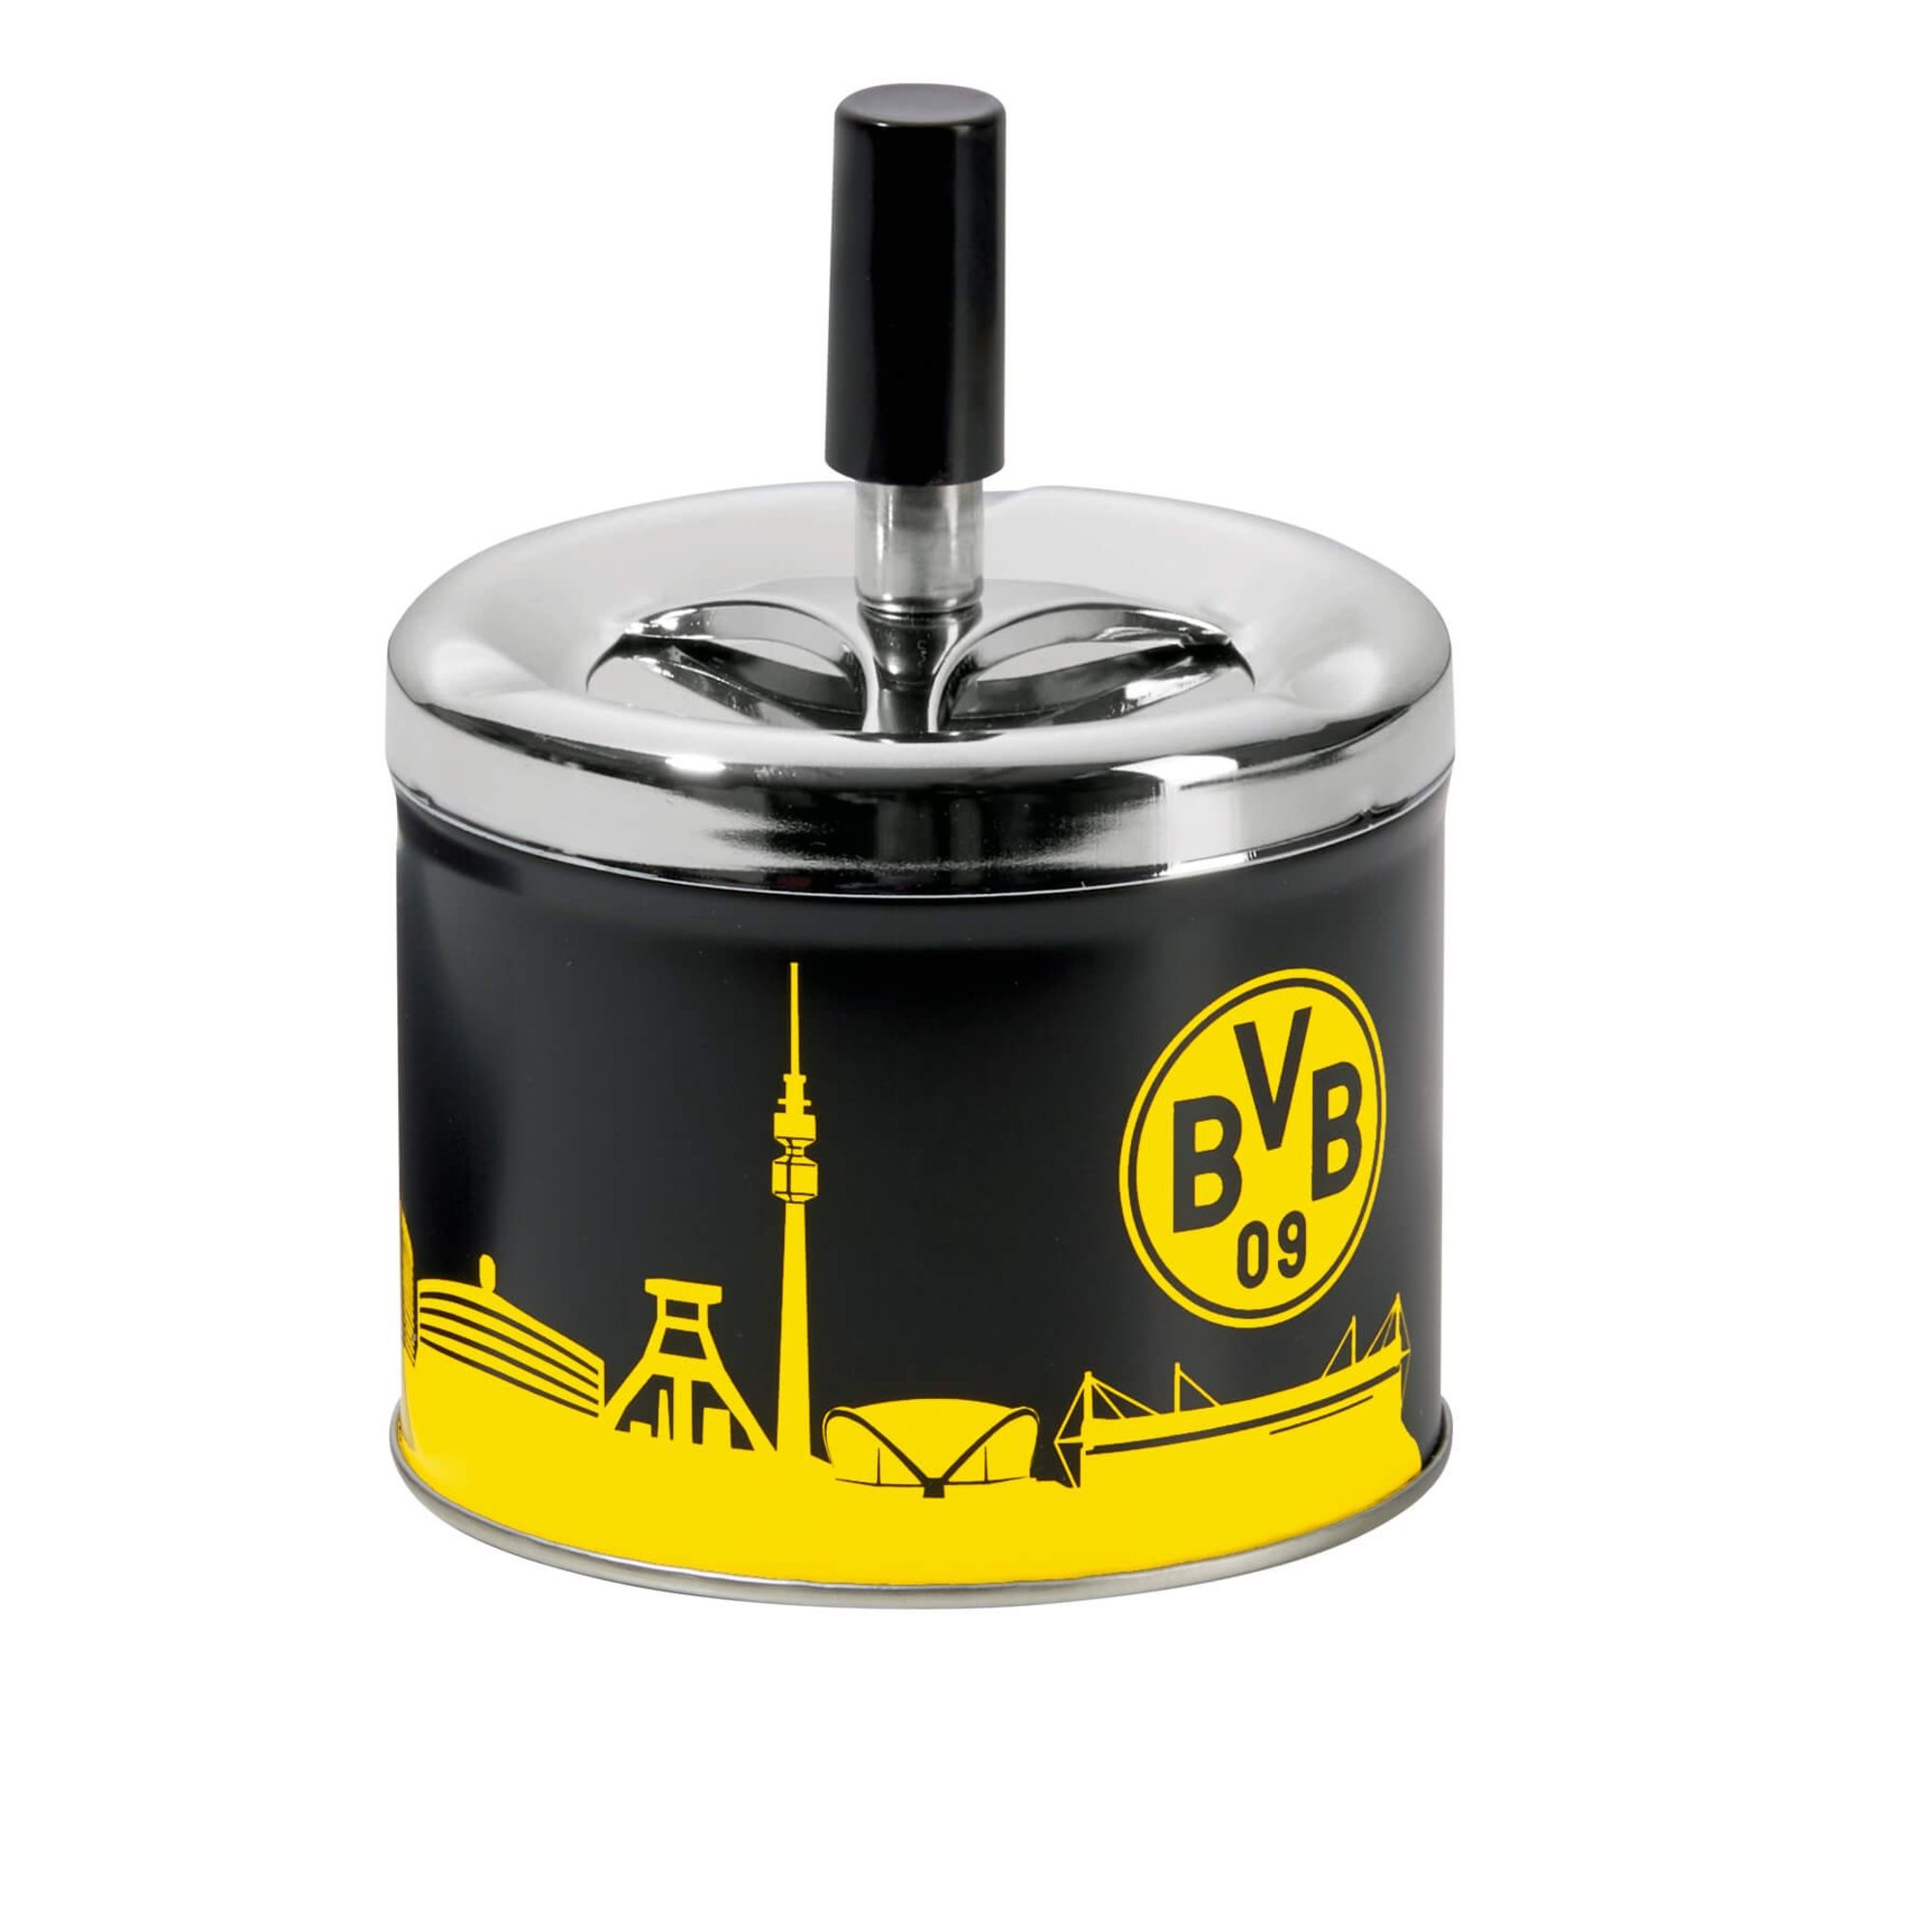 Borussia Dortmund - BVB Aschenbecher mit Deckel, Metall' kaufen - Spielwaren